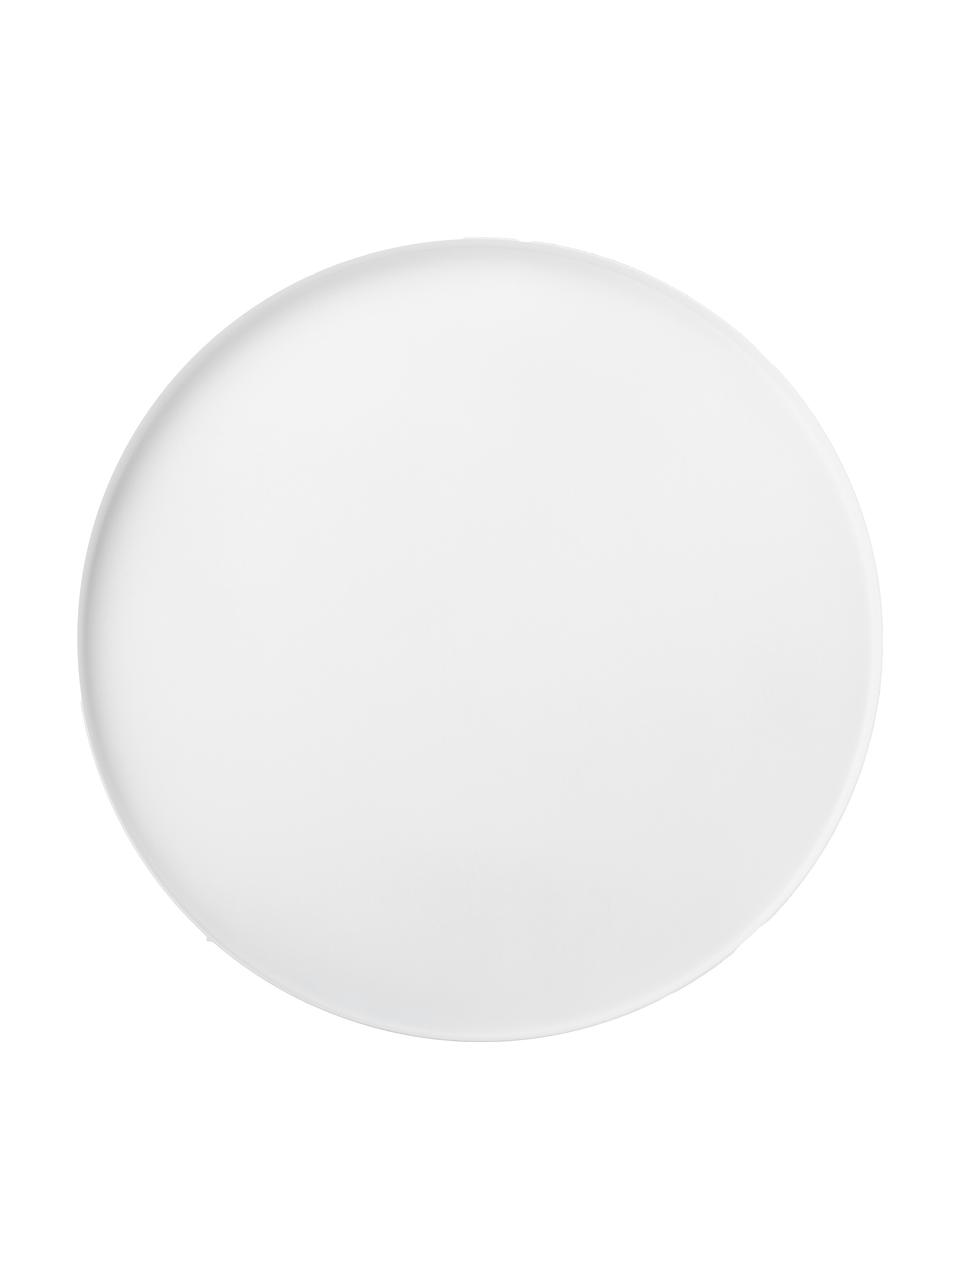 Rundes Deko-Tablett Circle, Ø 30 cm, Edelstahl, pulverbeschichtet, Weiß, Ø 30 cm